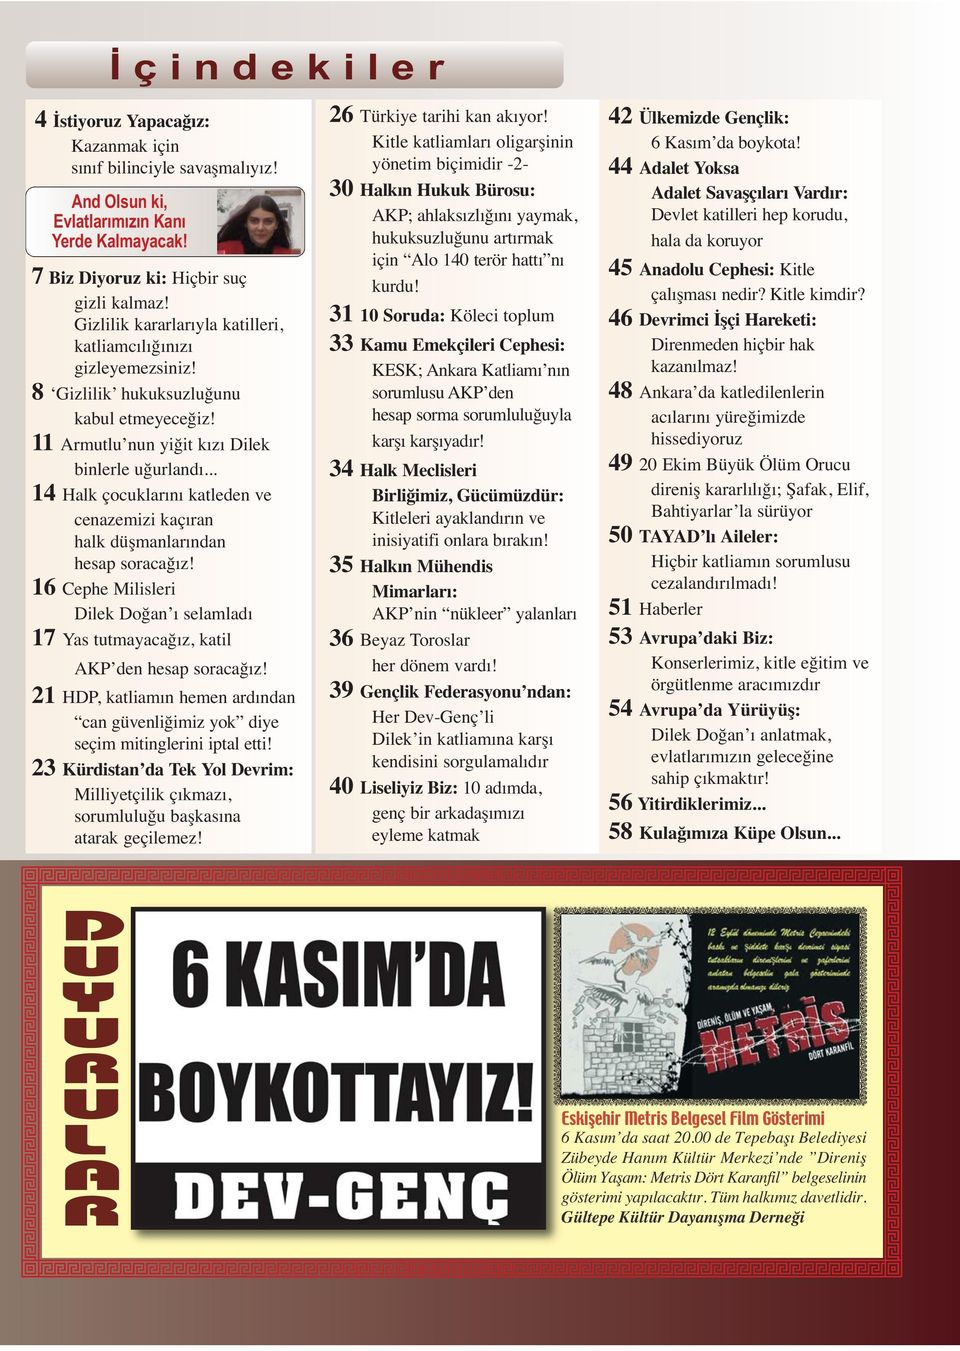 .. 14 Halk çocuklarını katleden ve cenazemizi kaçıran halk düşmanlarından hesap soracağız! 16 Cephe Milisleri Dilek Doğan ı selamladı 17 Yas tutmayacağız, katil AKP den hesap soracağız!